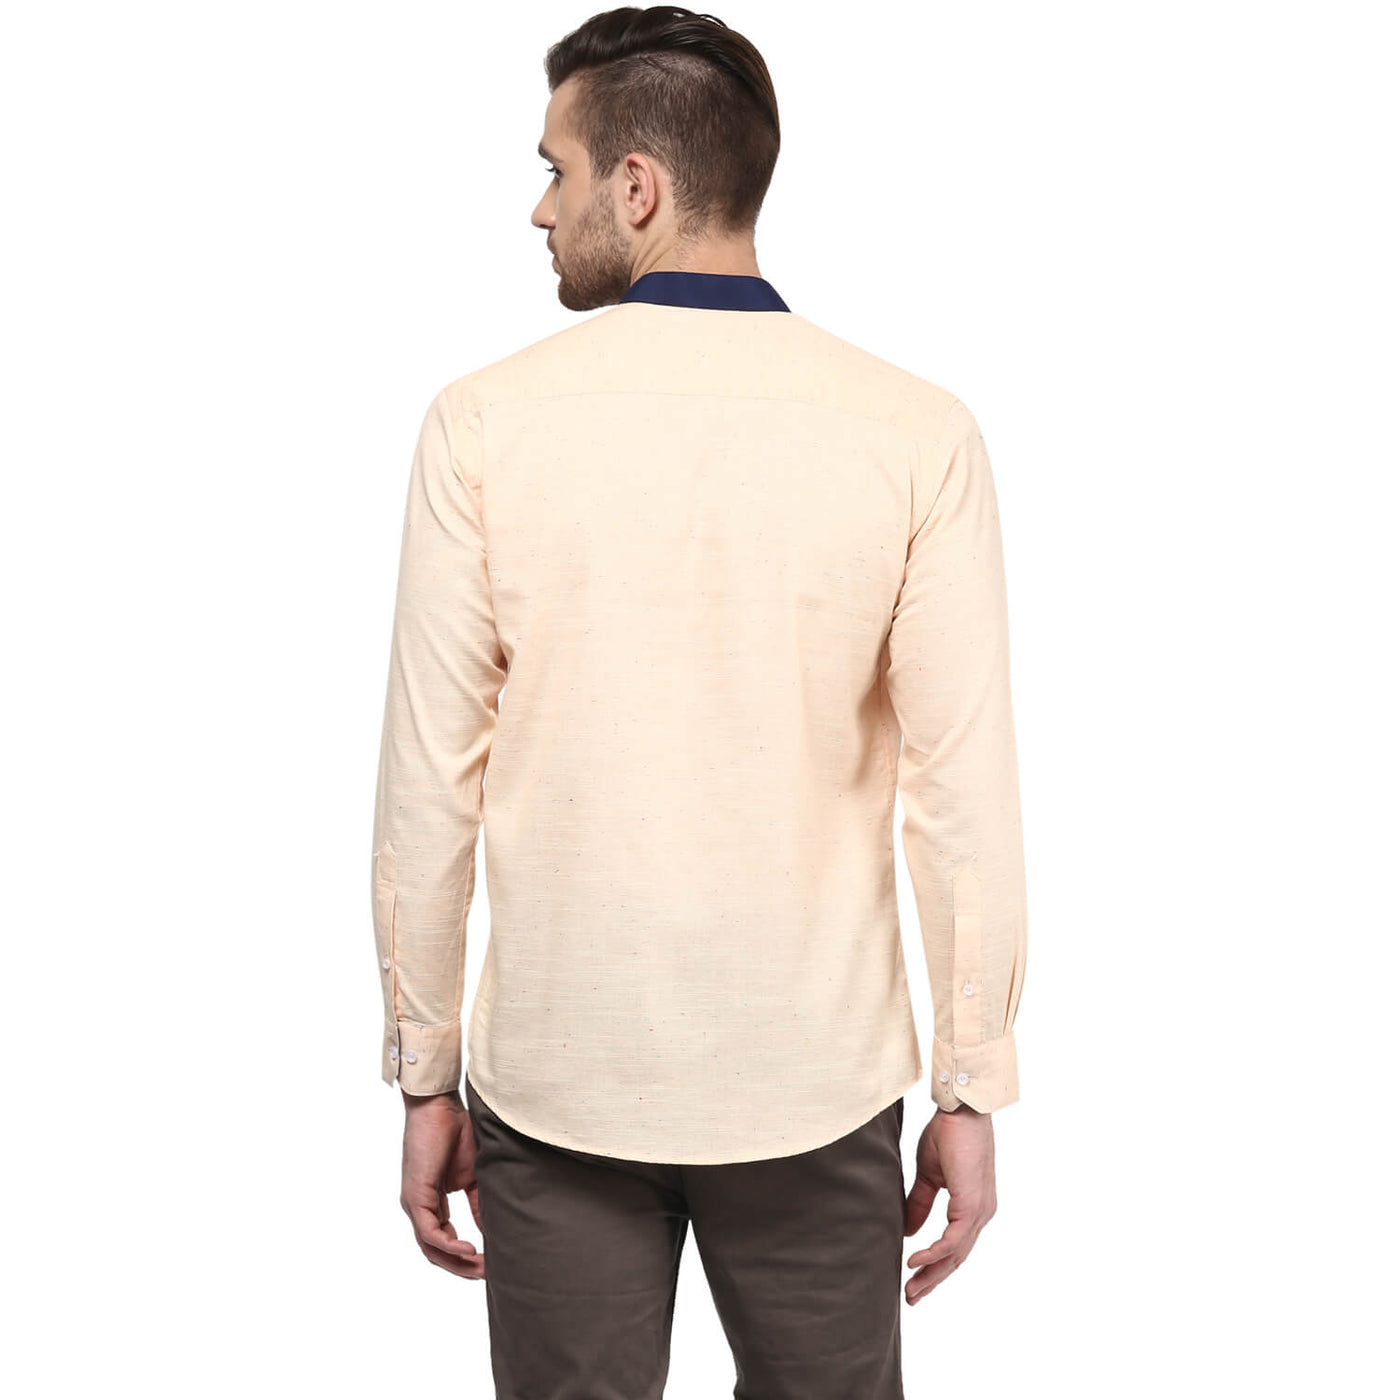 Premium 100% Cotton Shirt Peach Color